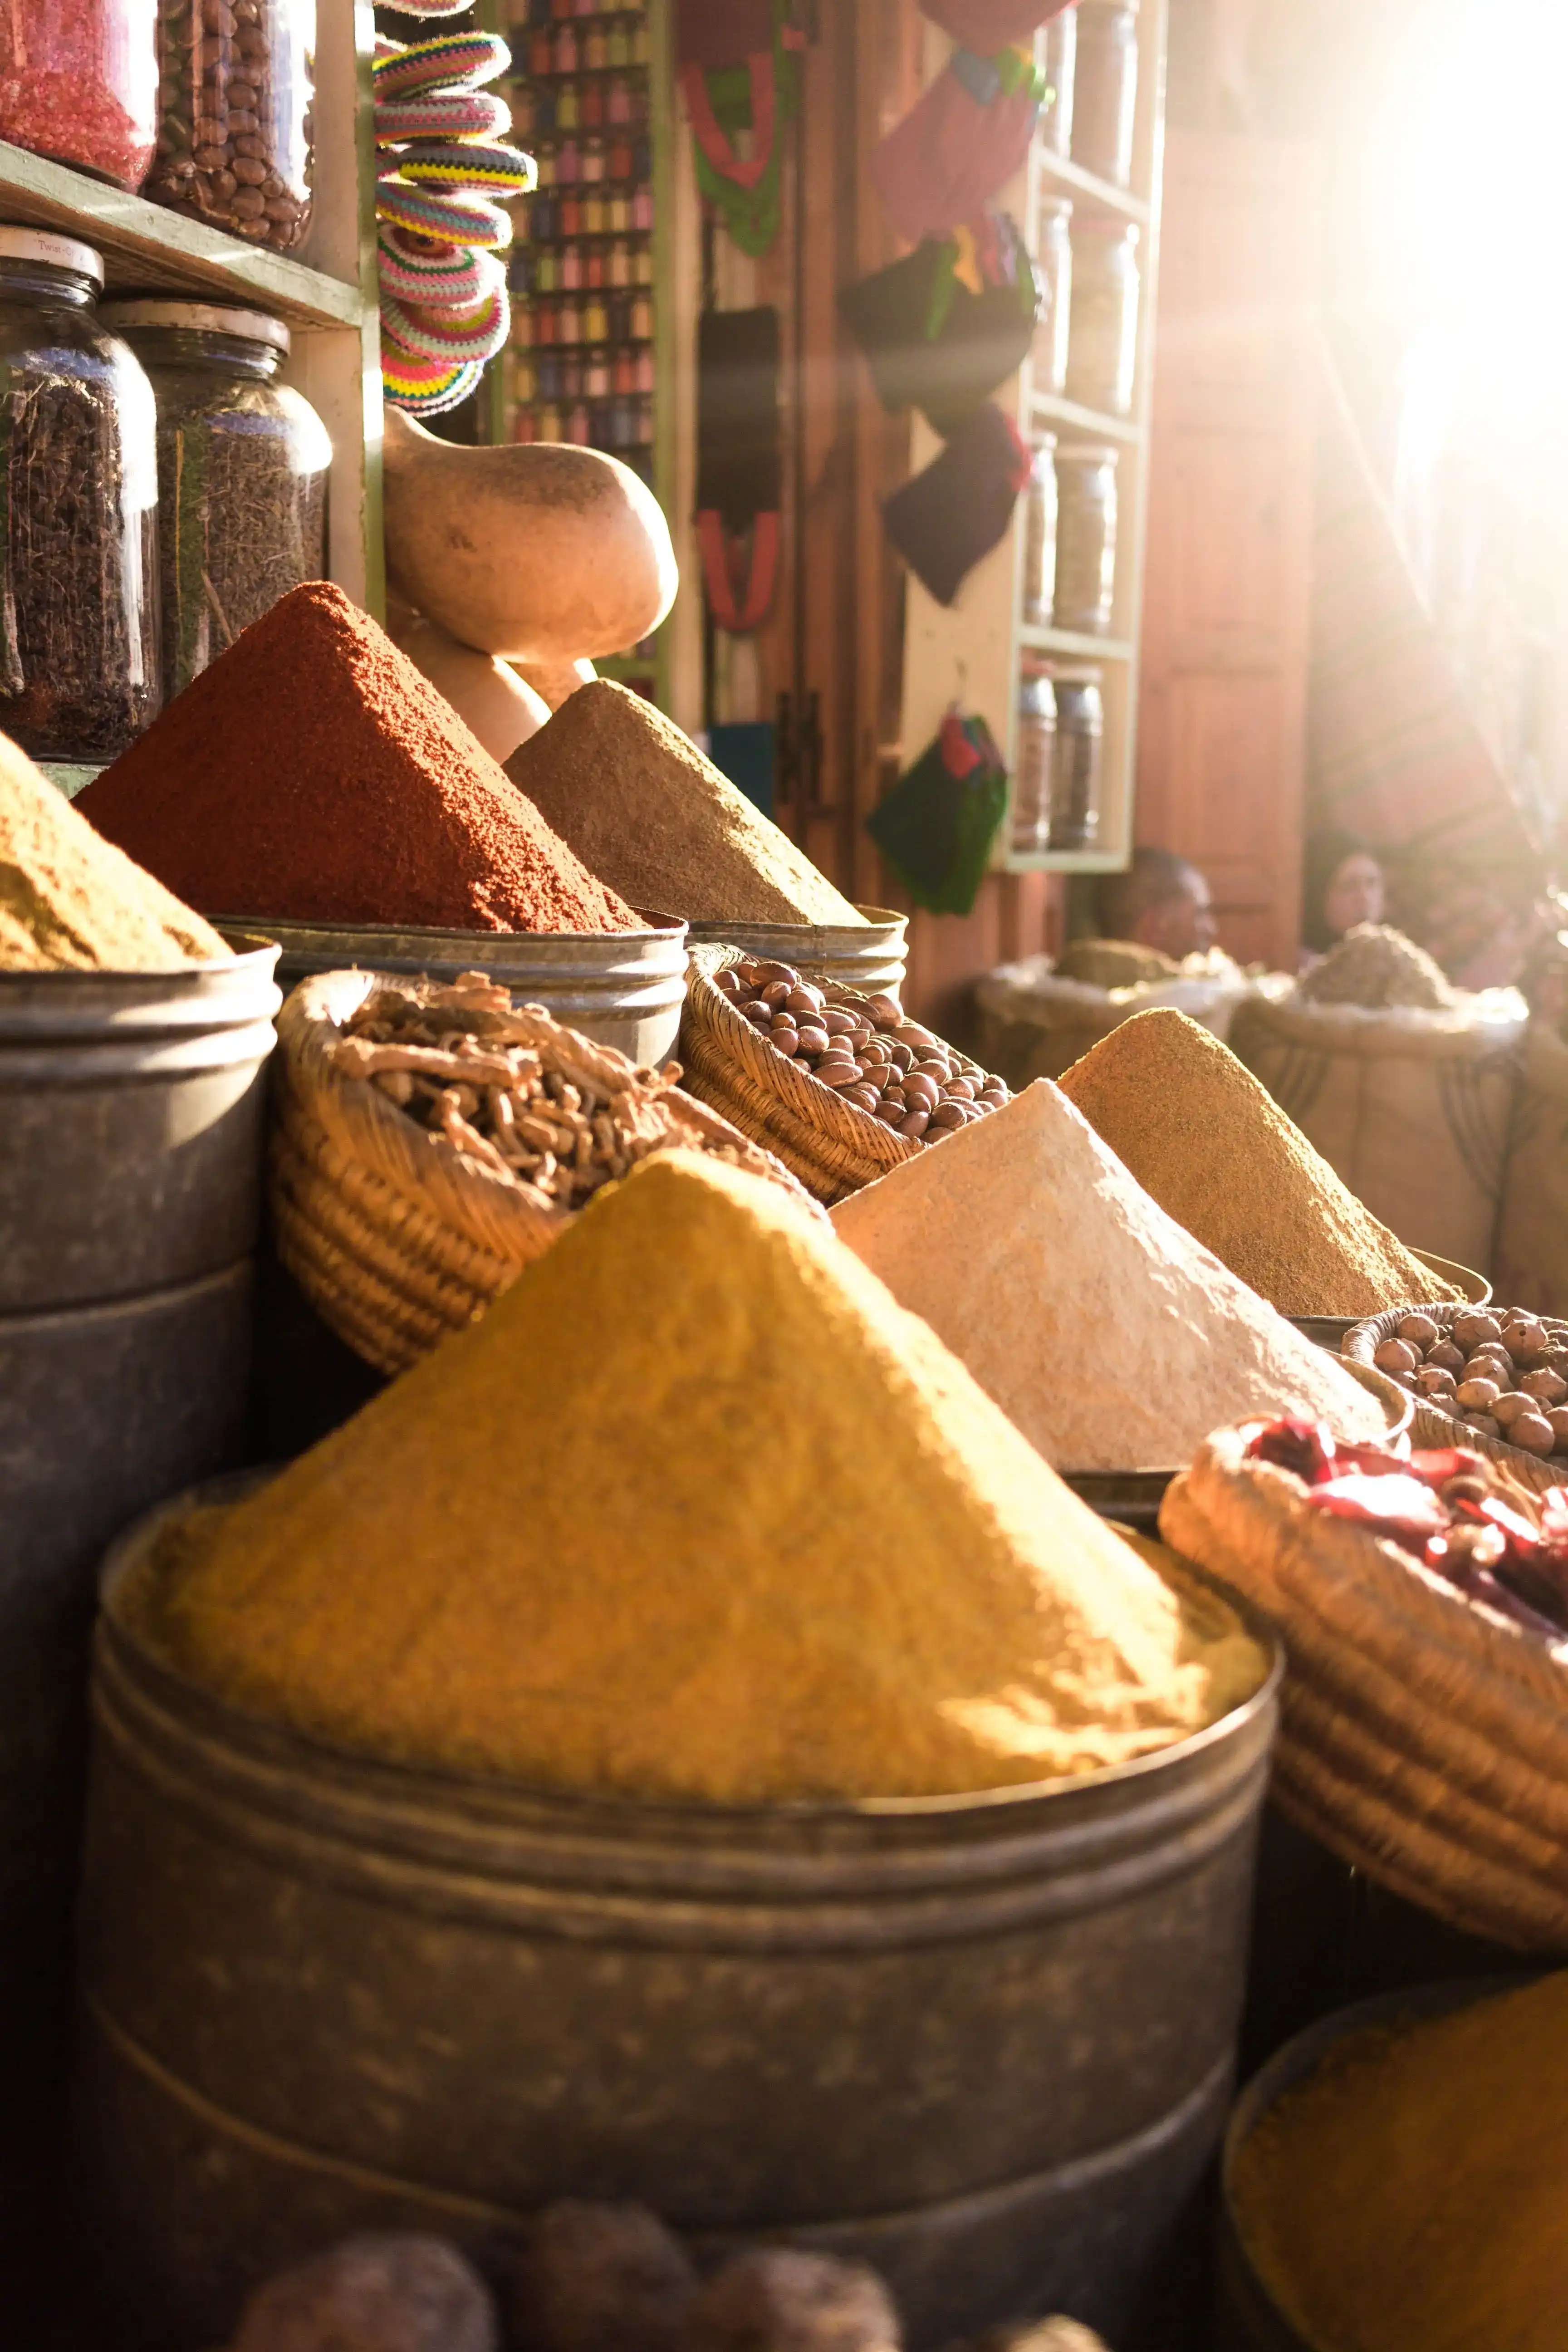 Epices marocaines au marché